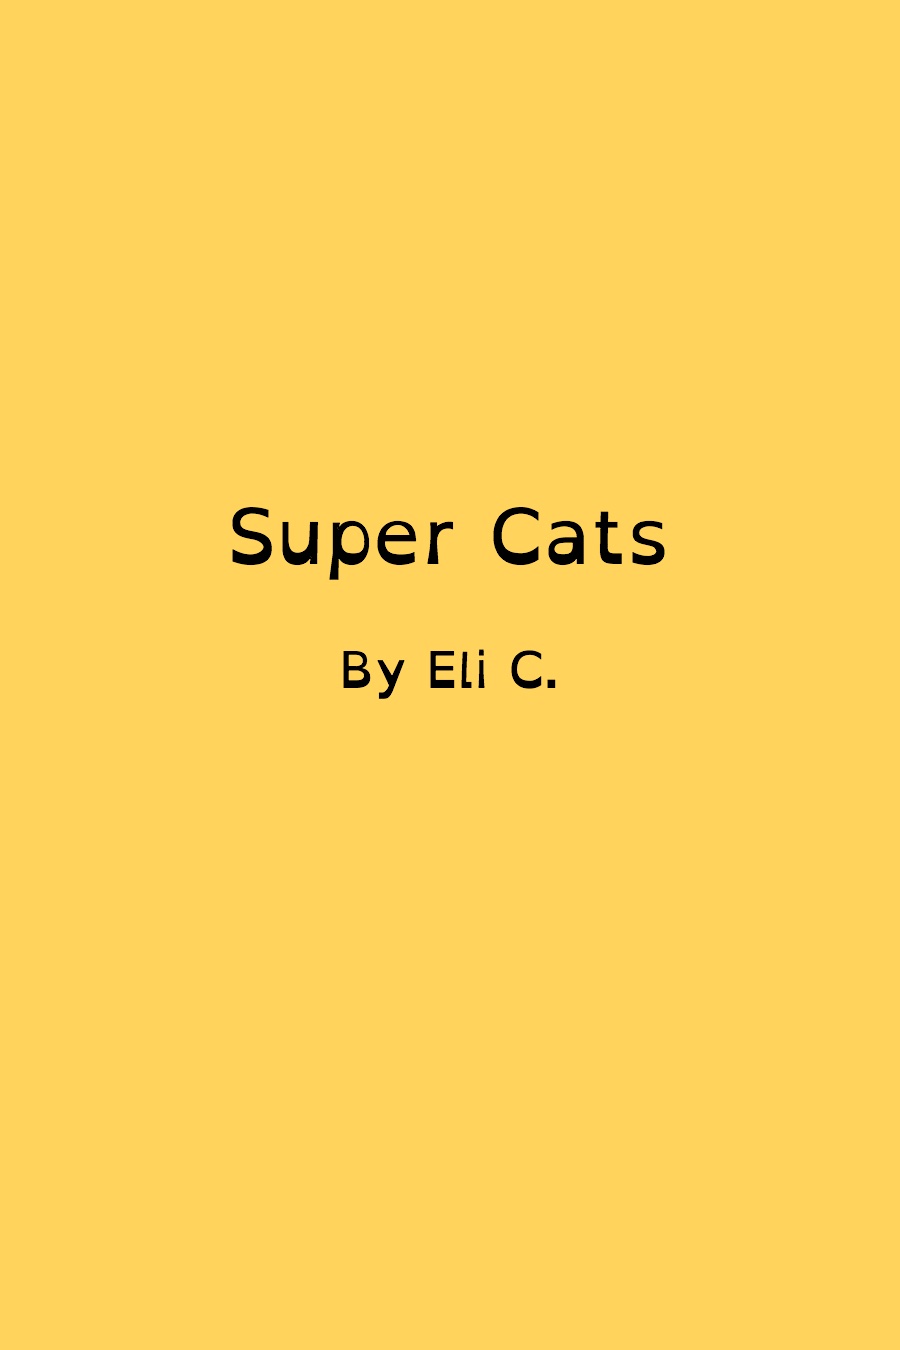 Super Cats by Elijah C